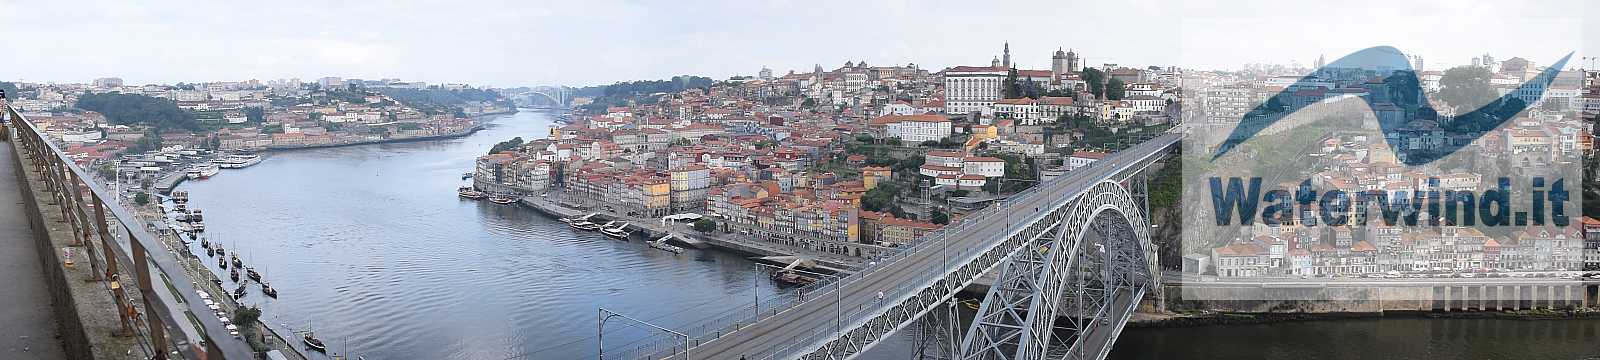 Portugal, juillet 2018